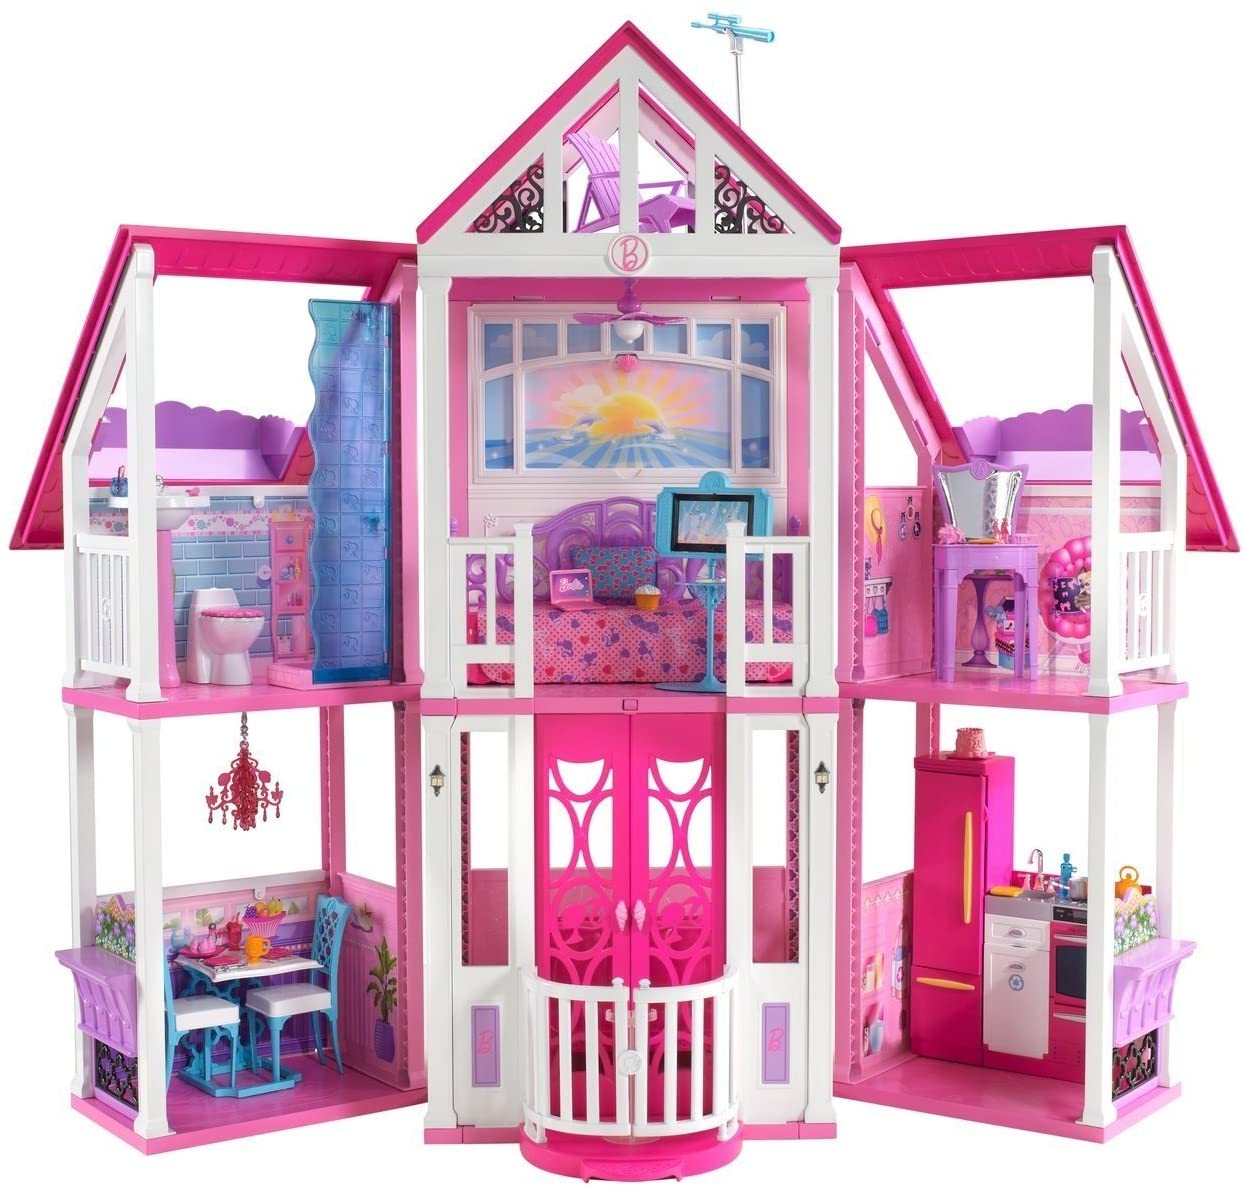 Rosefarve kom videre krænkelse 60 Years of Dreams: A Comprehensive Overview of Barbie's Dreamhouses